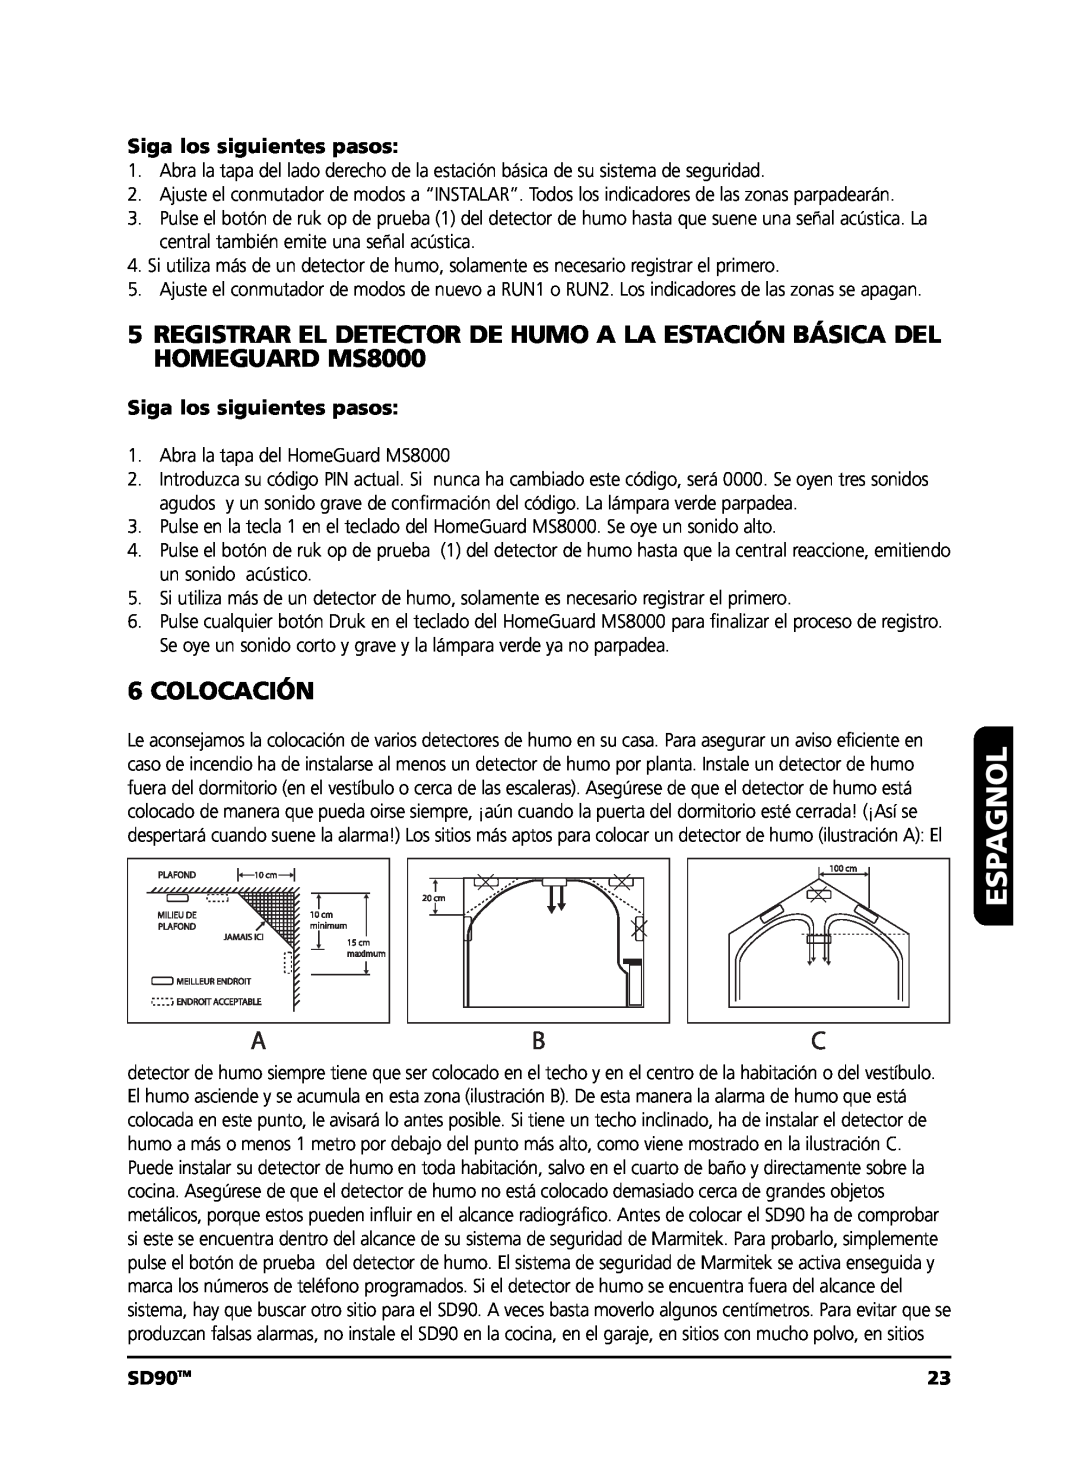 Marmitek user manual Colocación, Espagnol, SD90TM 